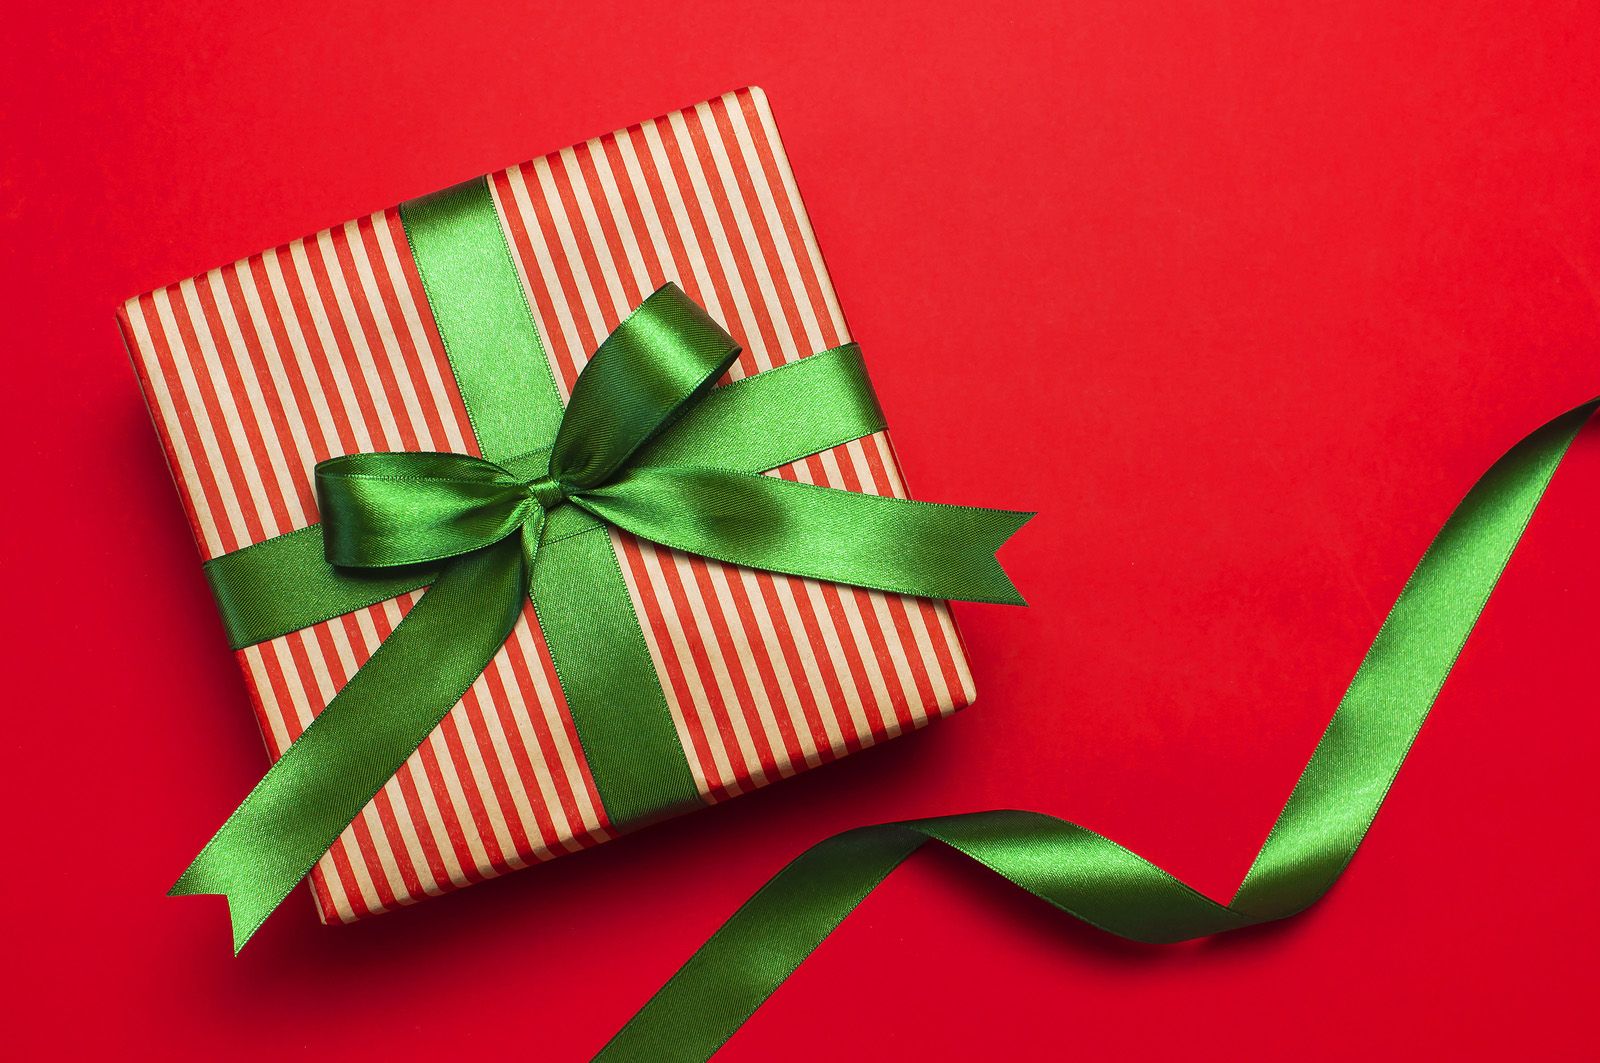 Triunfa con estos lazos originales para envolver regalos (Bigstock)